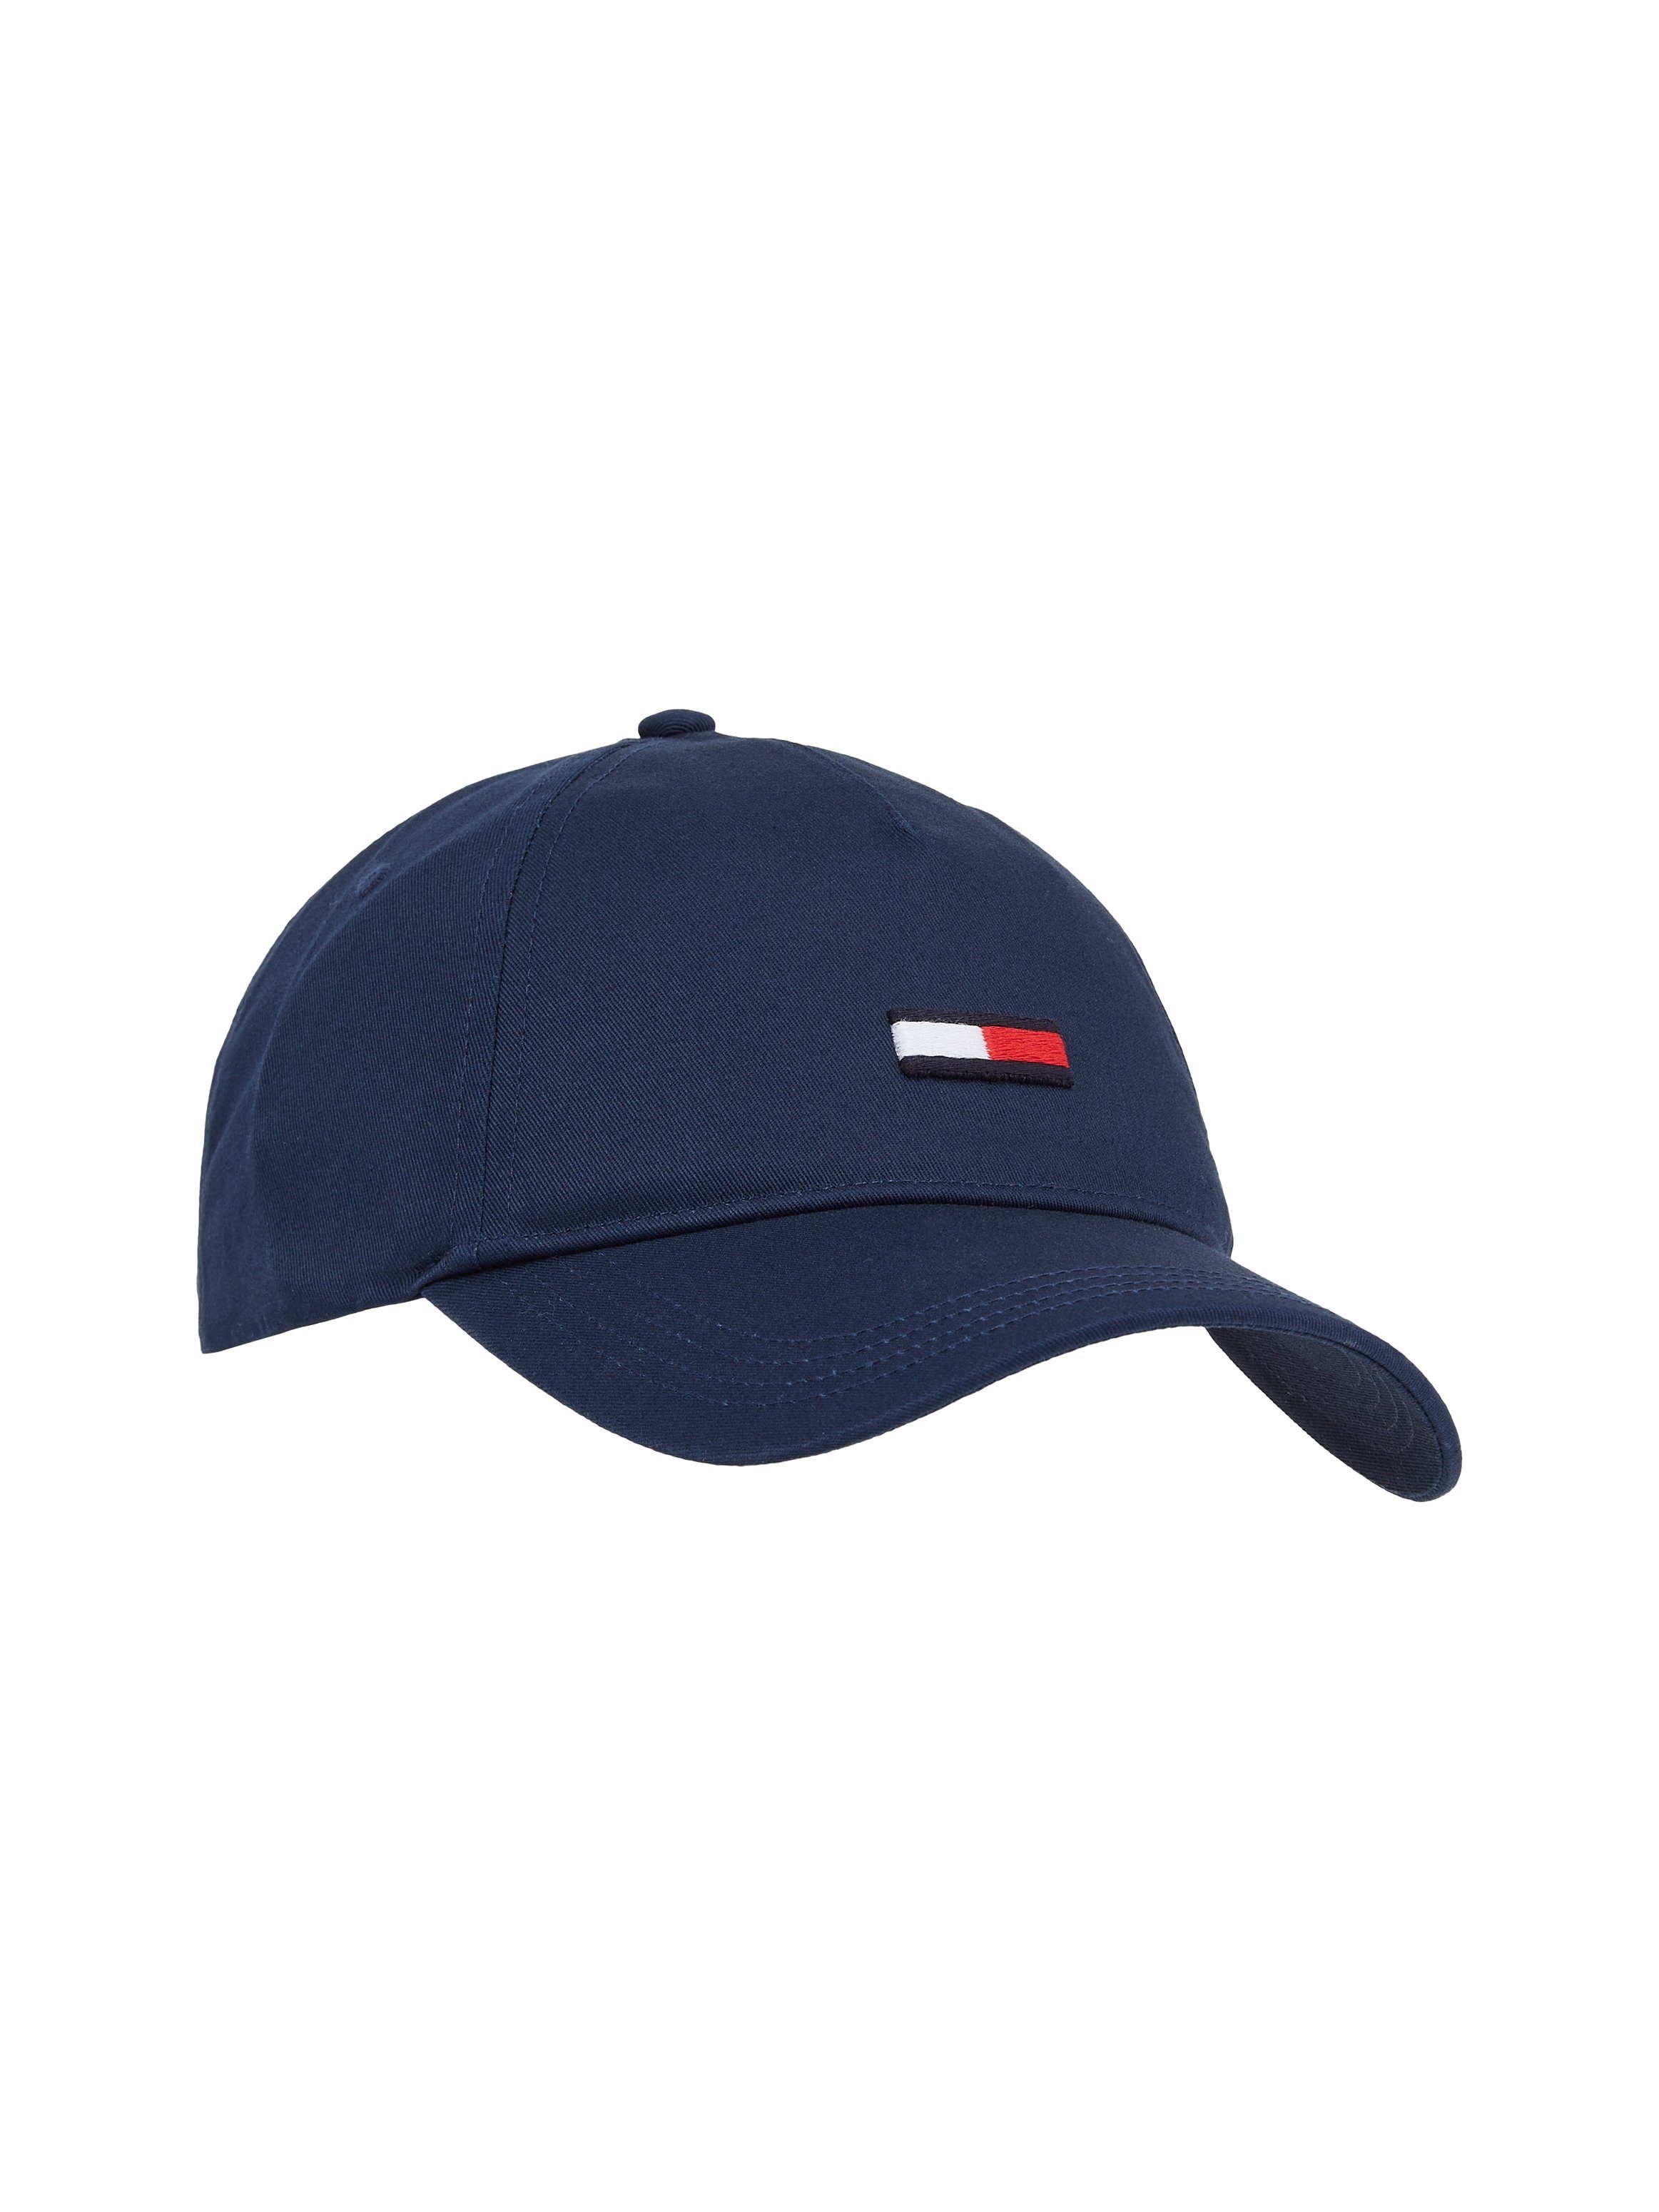 Tommy FLAG Twilight CAP verlängerter Jeans Baseball TJW Navy mit Cap Flag